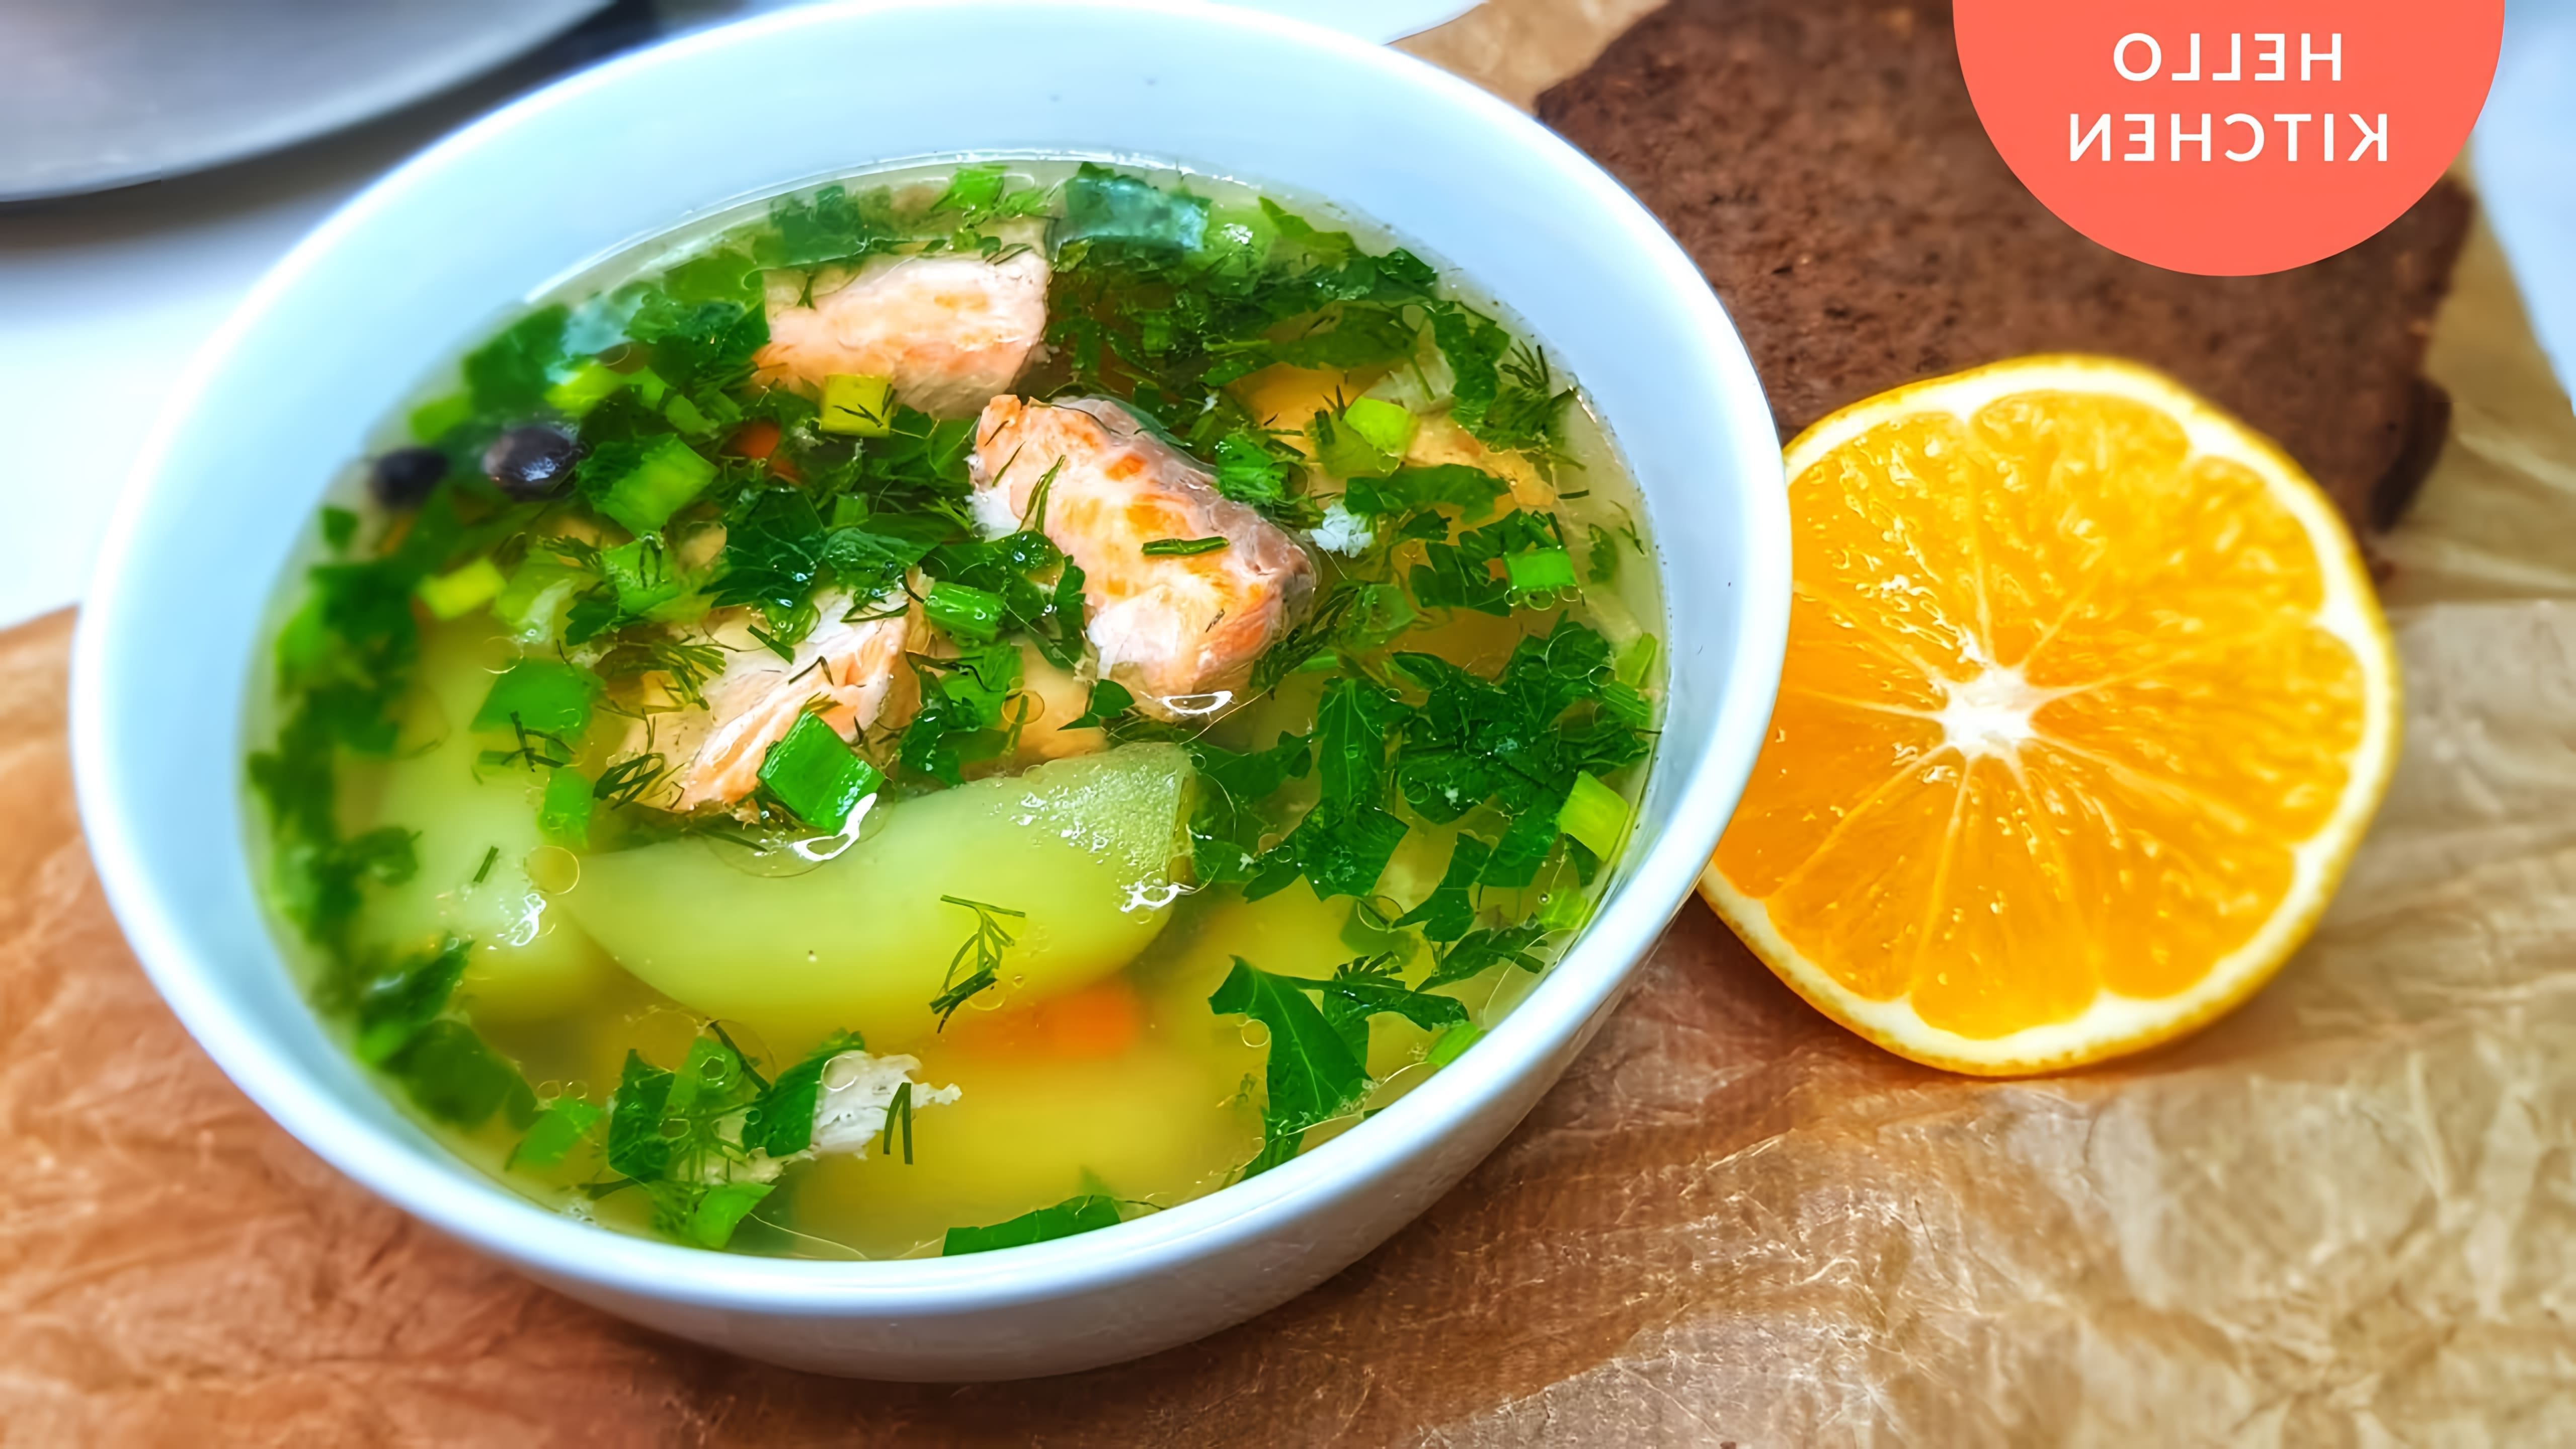 В этом видео-ролике будет представлен рецепт приготовления рыбного супа из форели